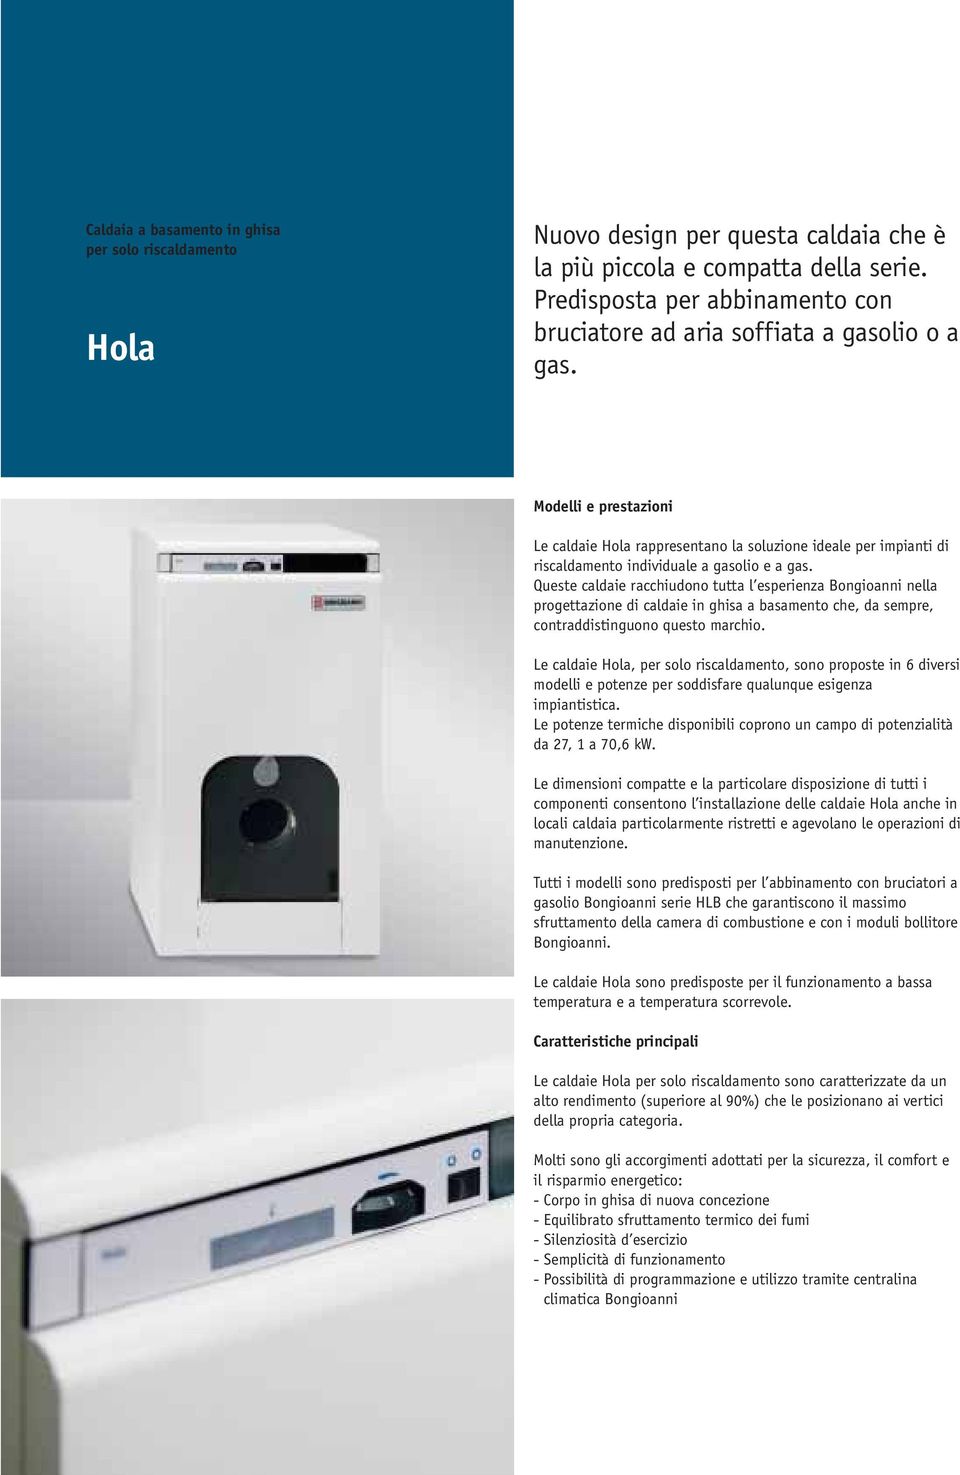 Modelli e prestazioni Le caldaie Hola rappresentano la soluzione ideale per impianti di riscaldamento individuale a gasolio e a gas.